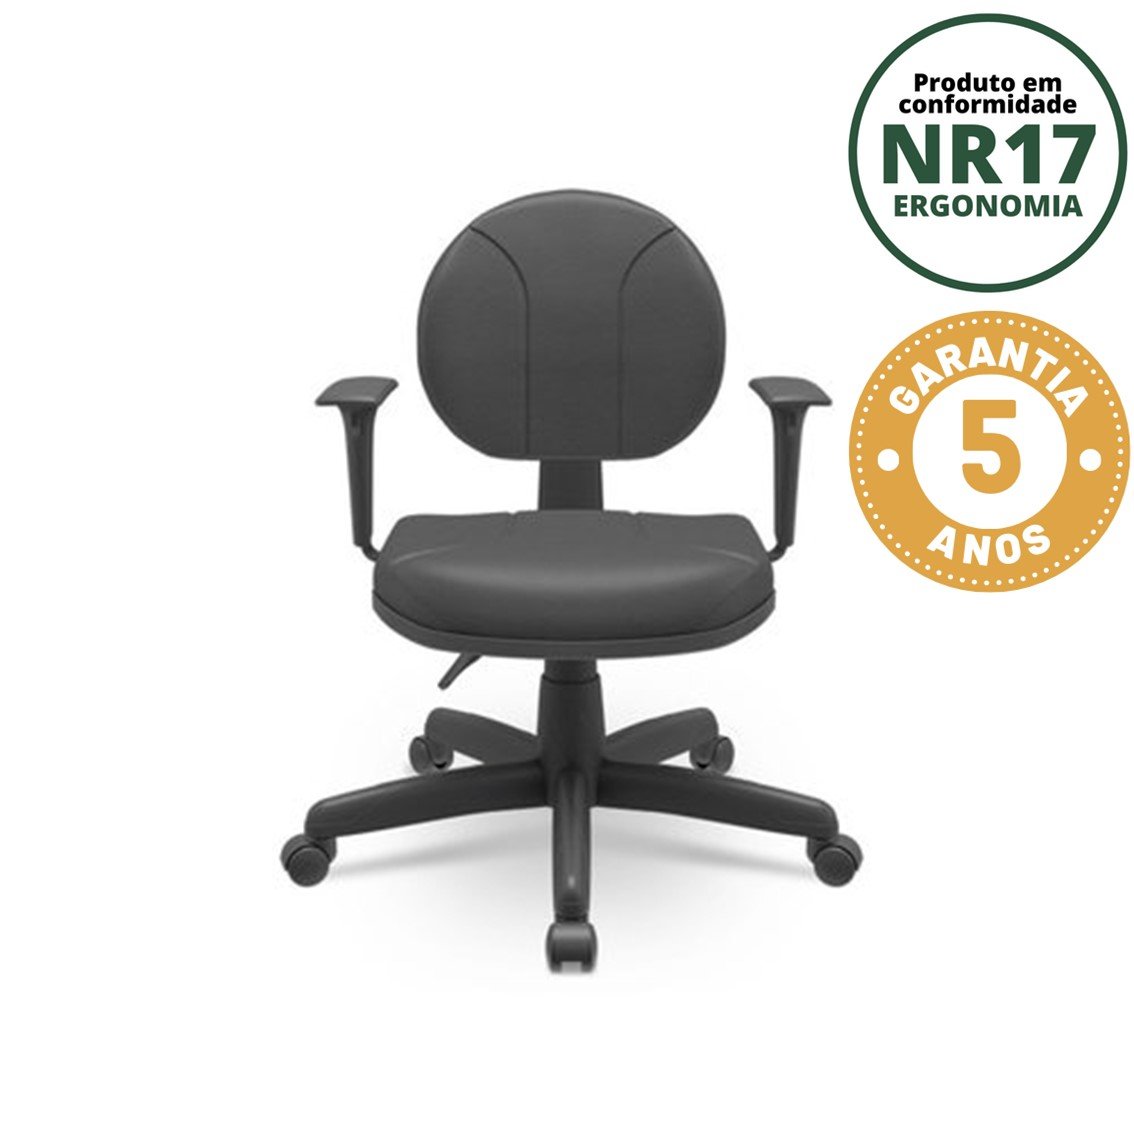 Cadeira para Escritório Ergonômica Secretária Backsystem Operativa NR17  - 1